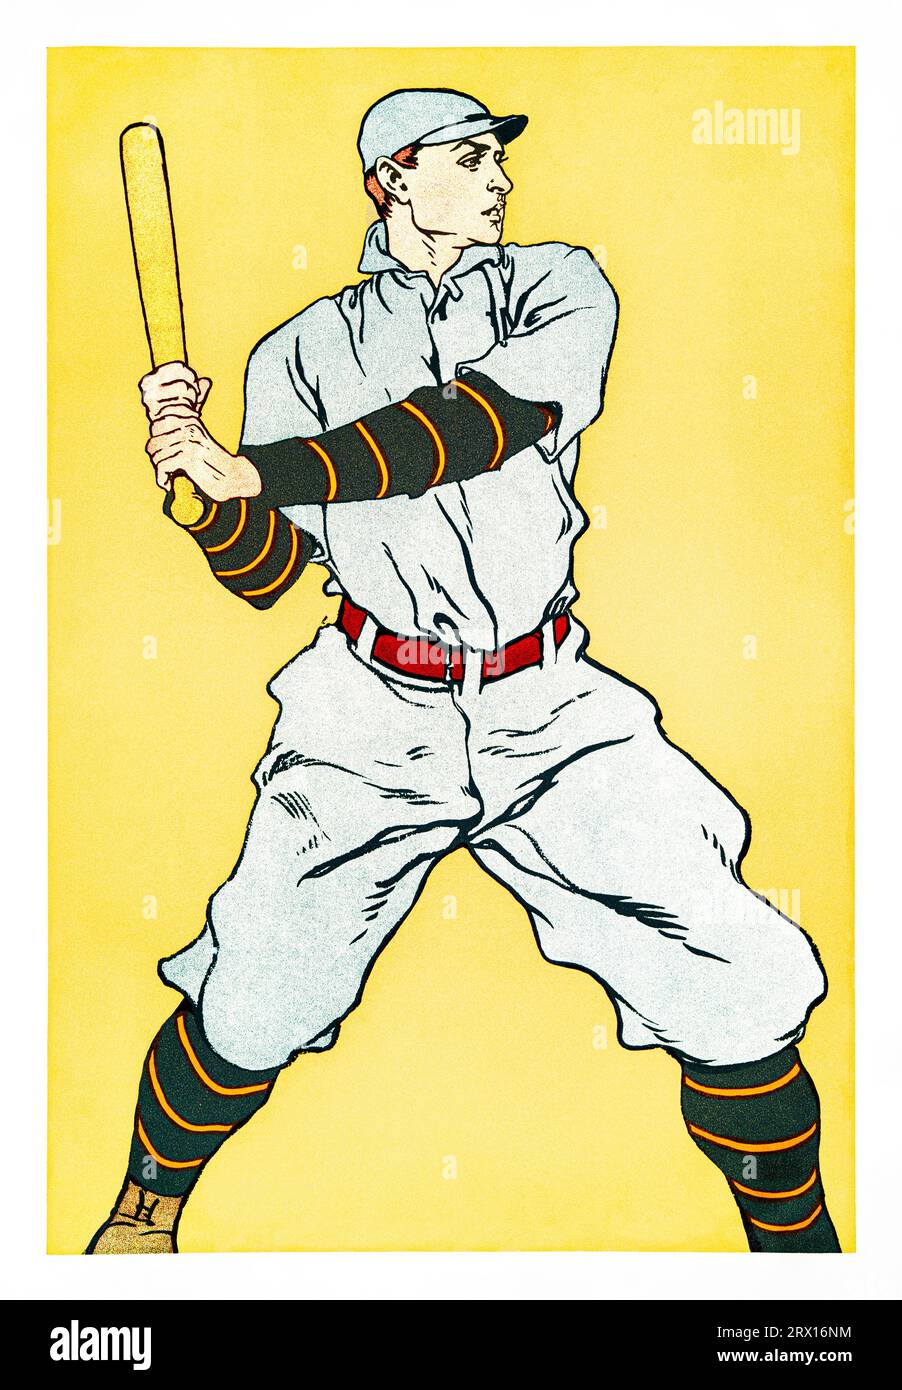 Disegno vintage di un giocatore di baseball che tiene un'impronta di pipistrello ad alta risoluzione di Edward Penfield. Originale della New York Public Library. Foto Stock